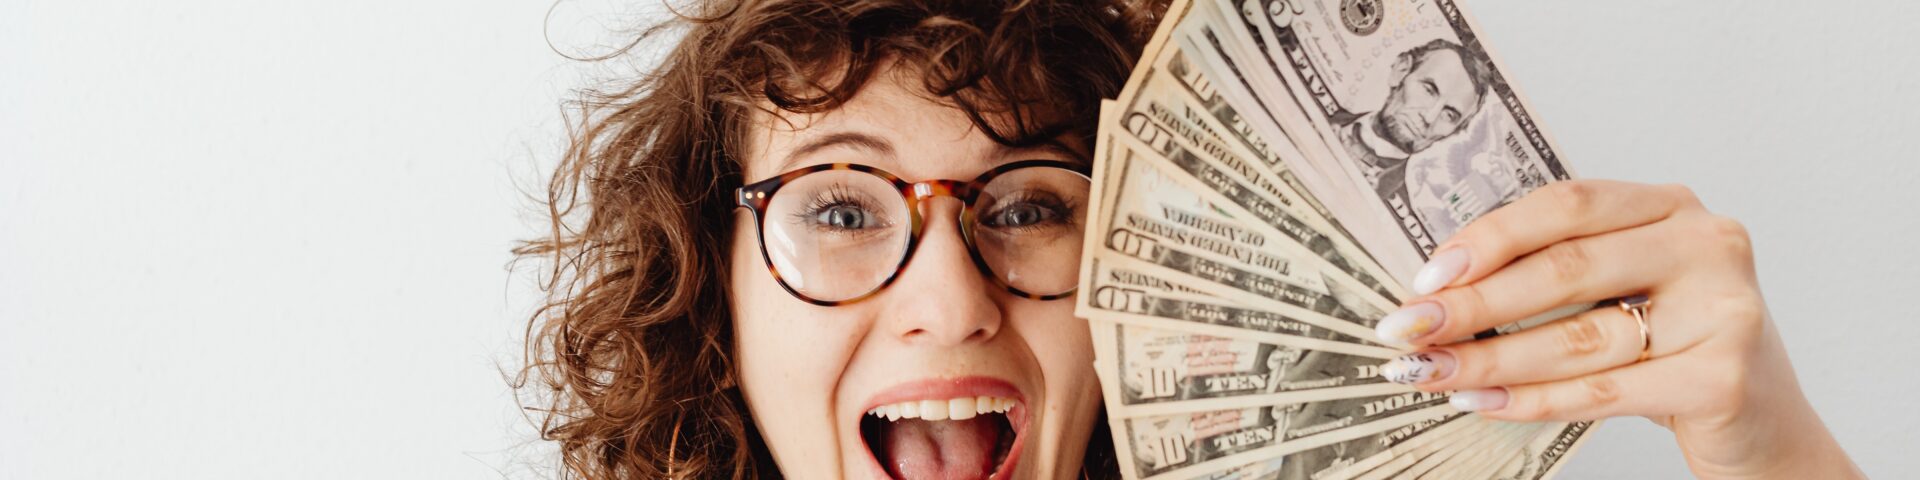 Vrouw met geld als illustratie bij artikel over extra sparen voor je pensioen